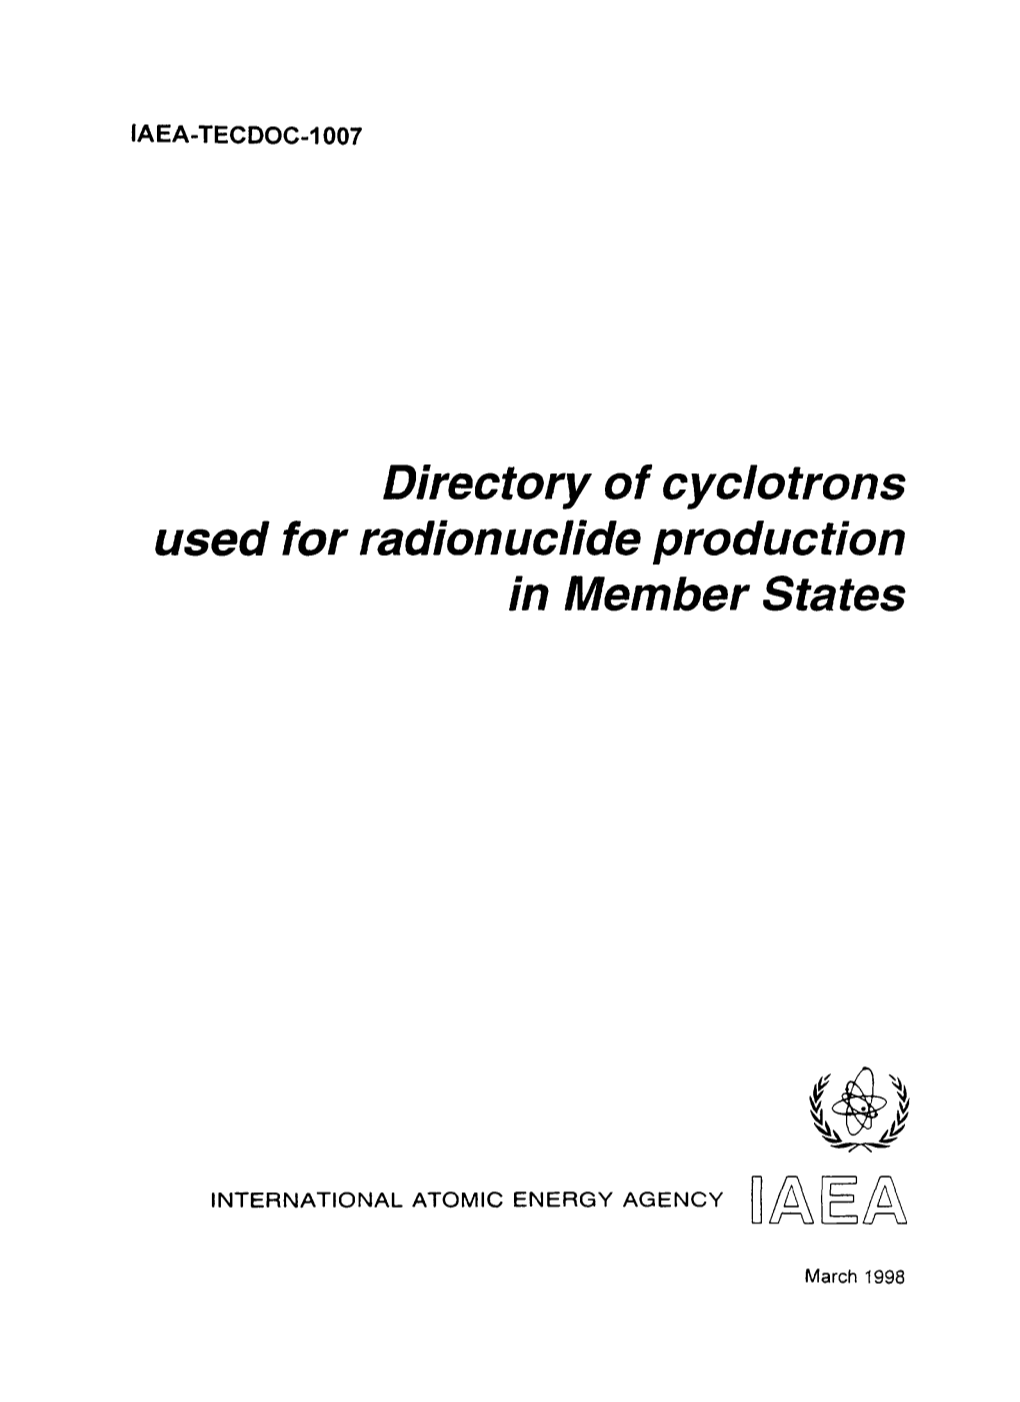 Used for Radionuclide Production in Member States Iaea, Vienna, 1998 Iaea-Tecdoc-1007 Issn 1011-4289